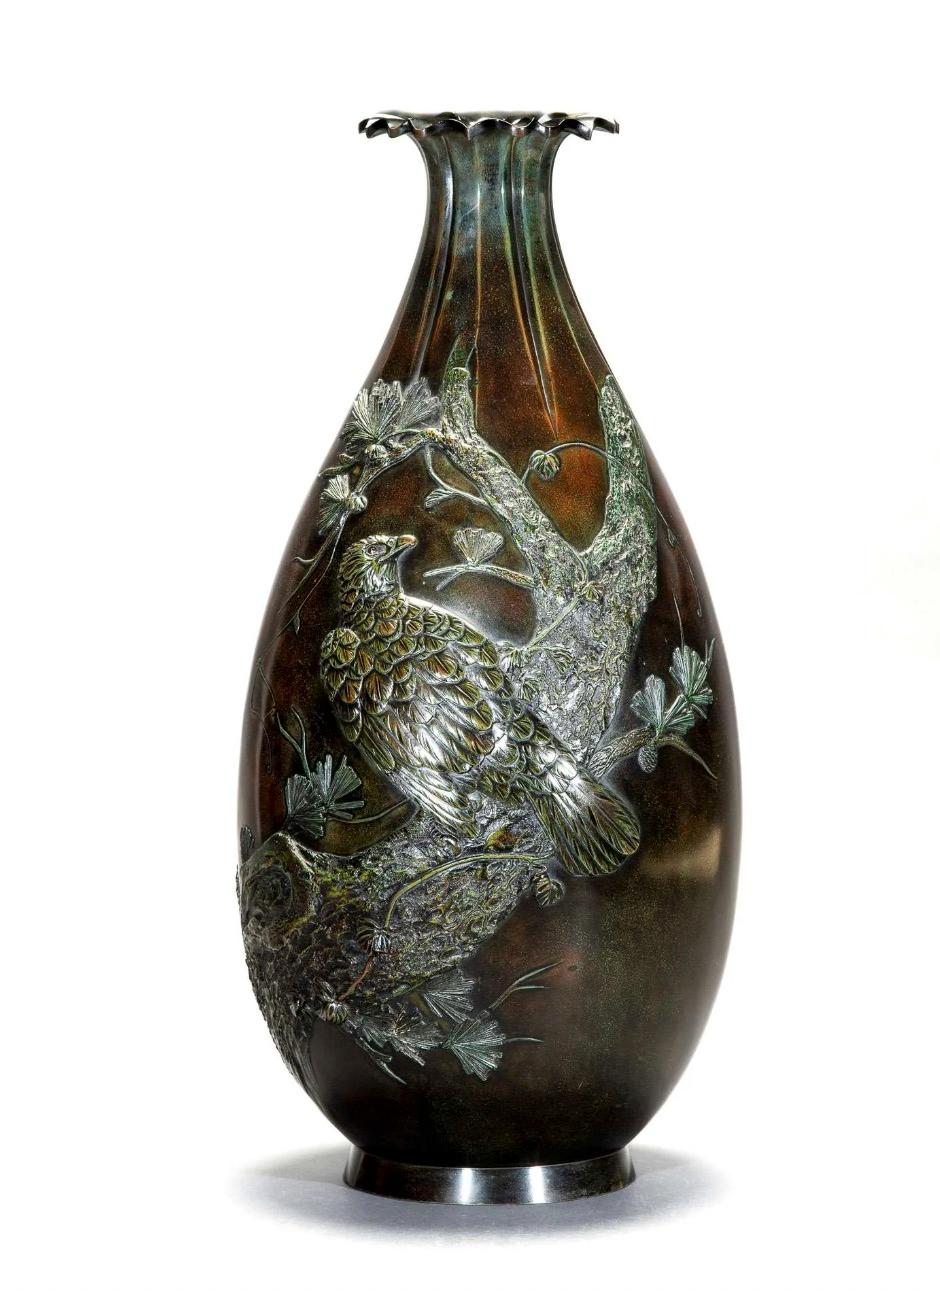 Grand vase en bronze à patine verdâtre-rougeâtre travaillé en relief représentant un faucon, la tête tournée vers la droite, sur une grande Branch qui s'enroule autour du vase en biais du bas jusqu'au haut du col. Bord lobé d'où partent des rainures